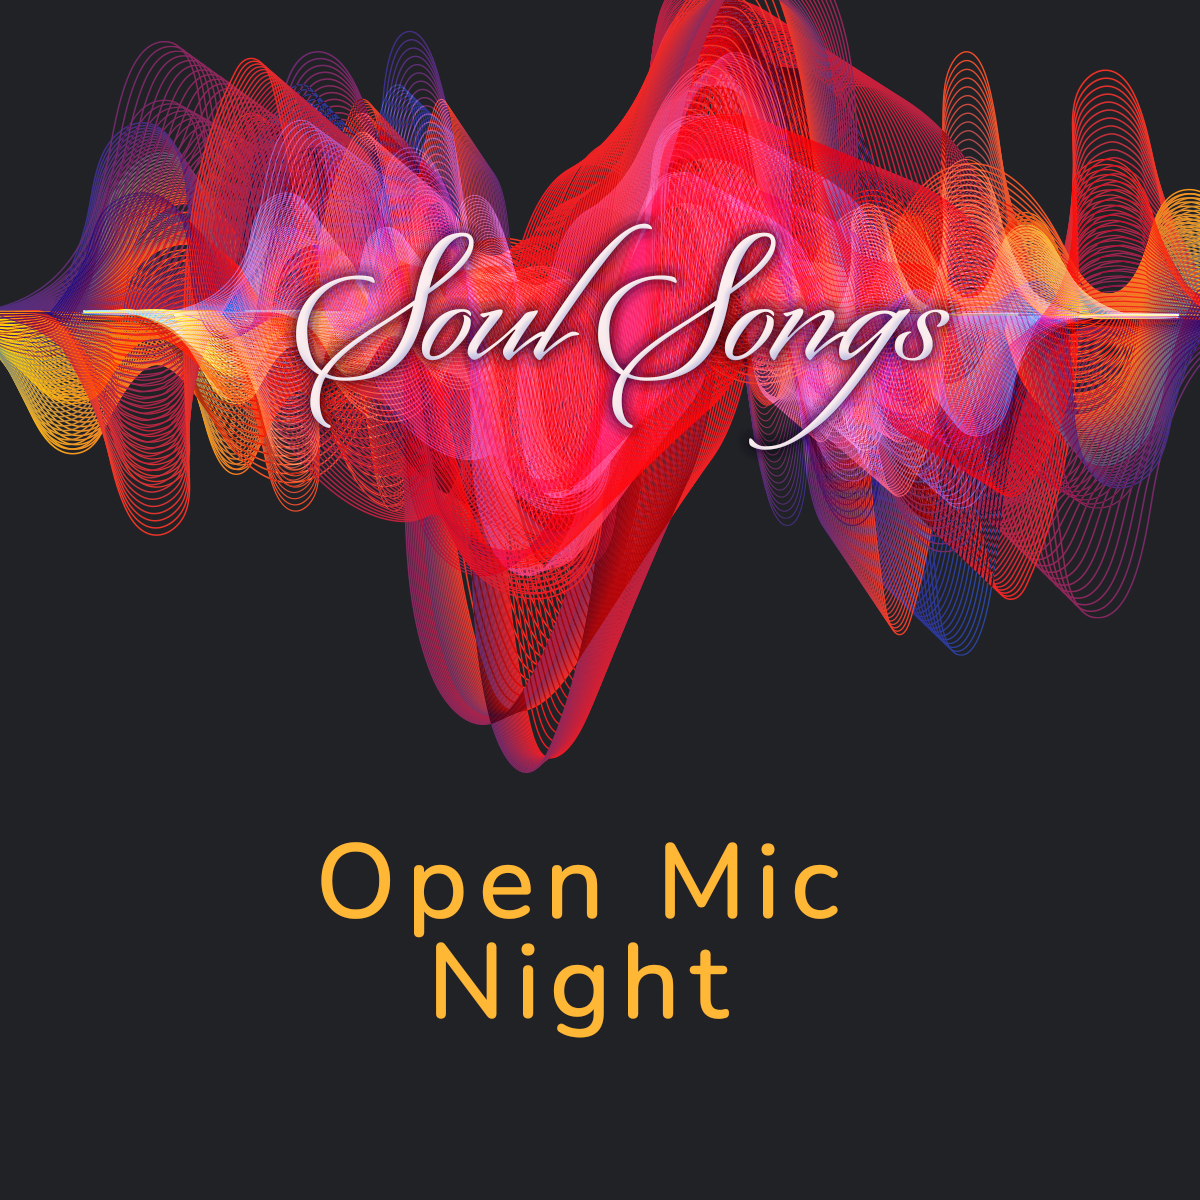 "Soul Songs" Open Mic Night